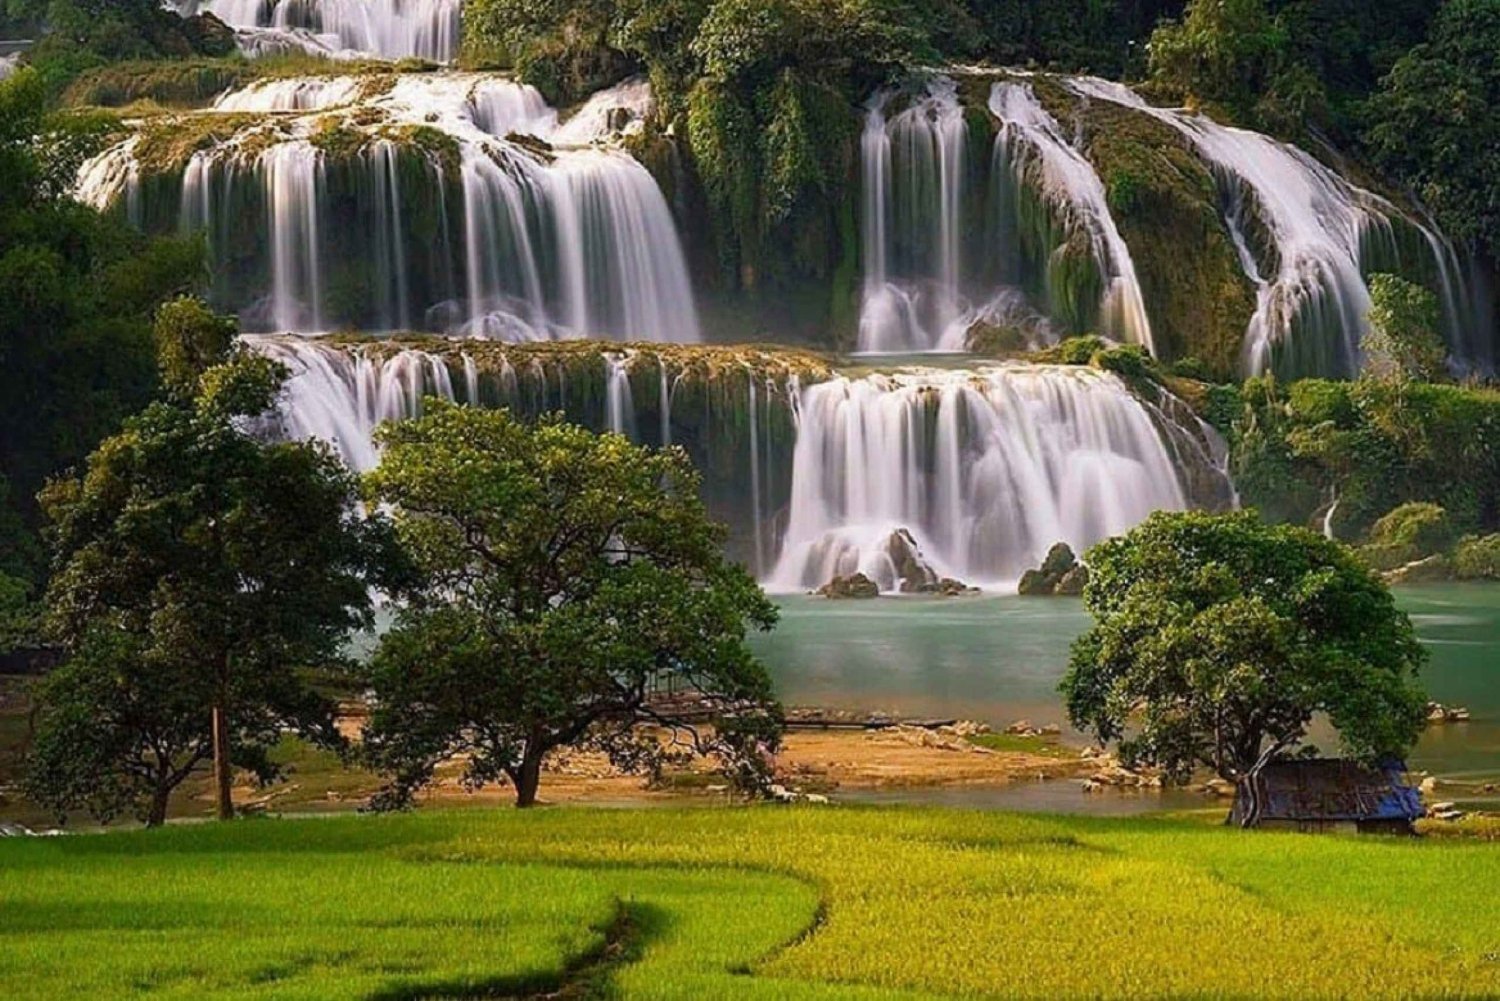 Da Hanoi: tour delle cascate Ban Gioc di 2 giorni